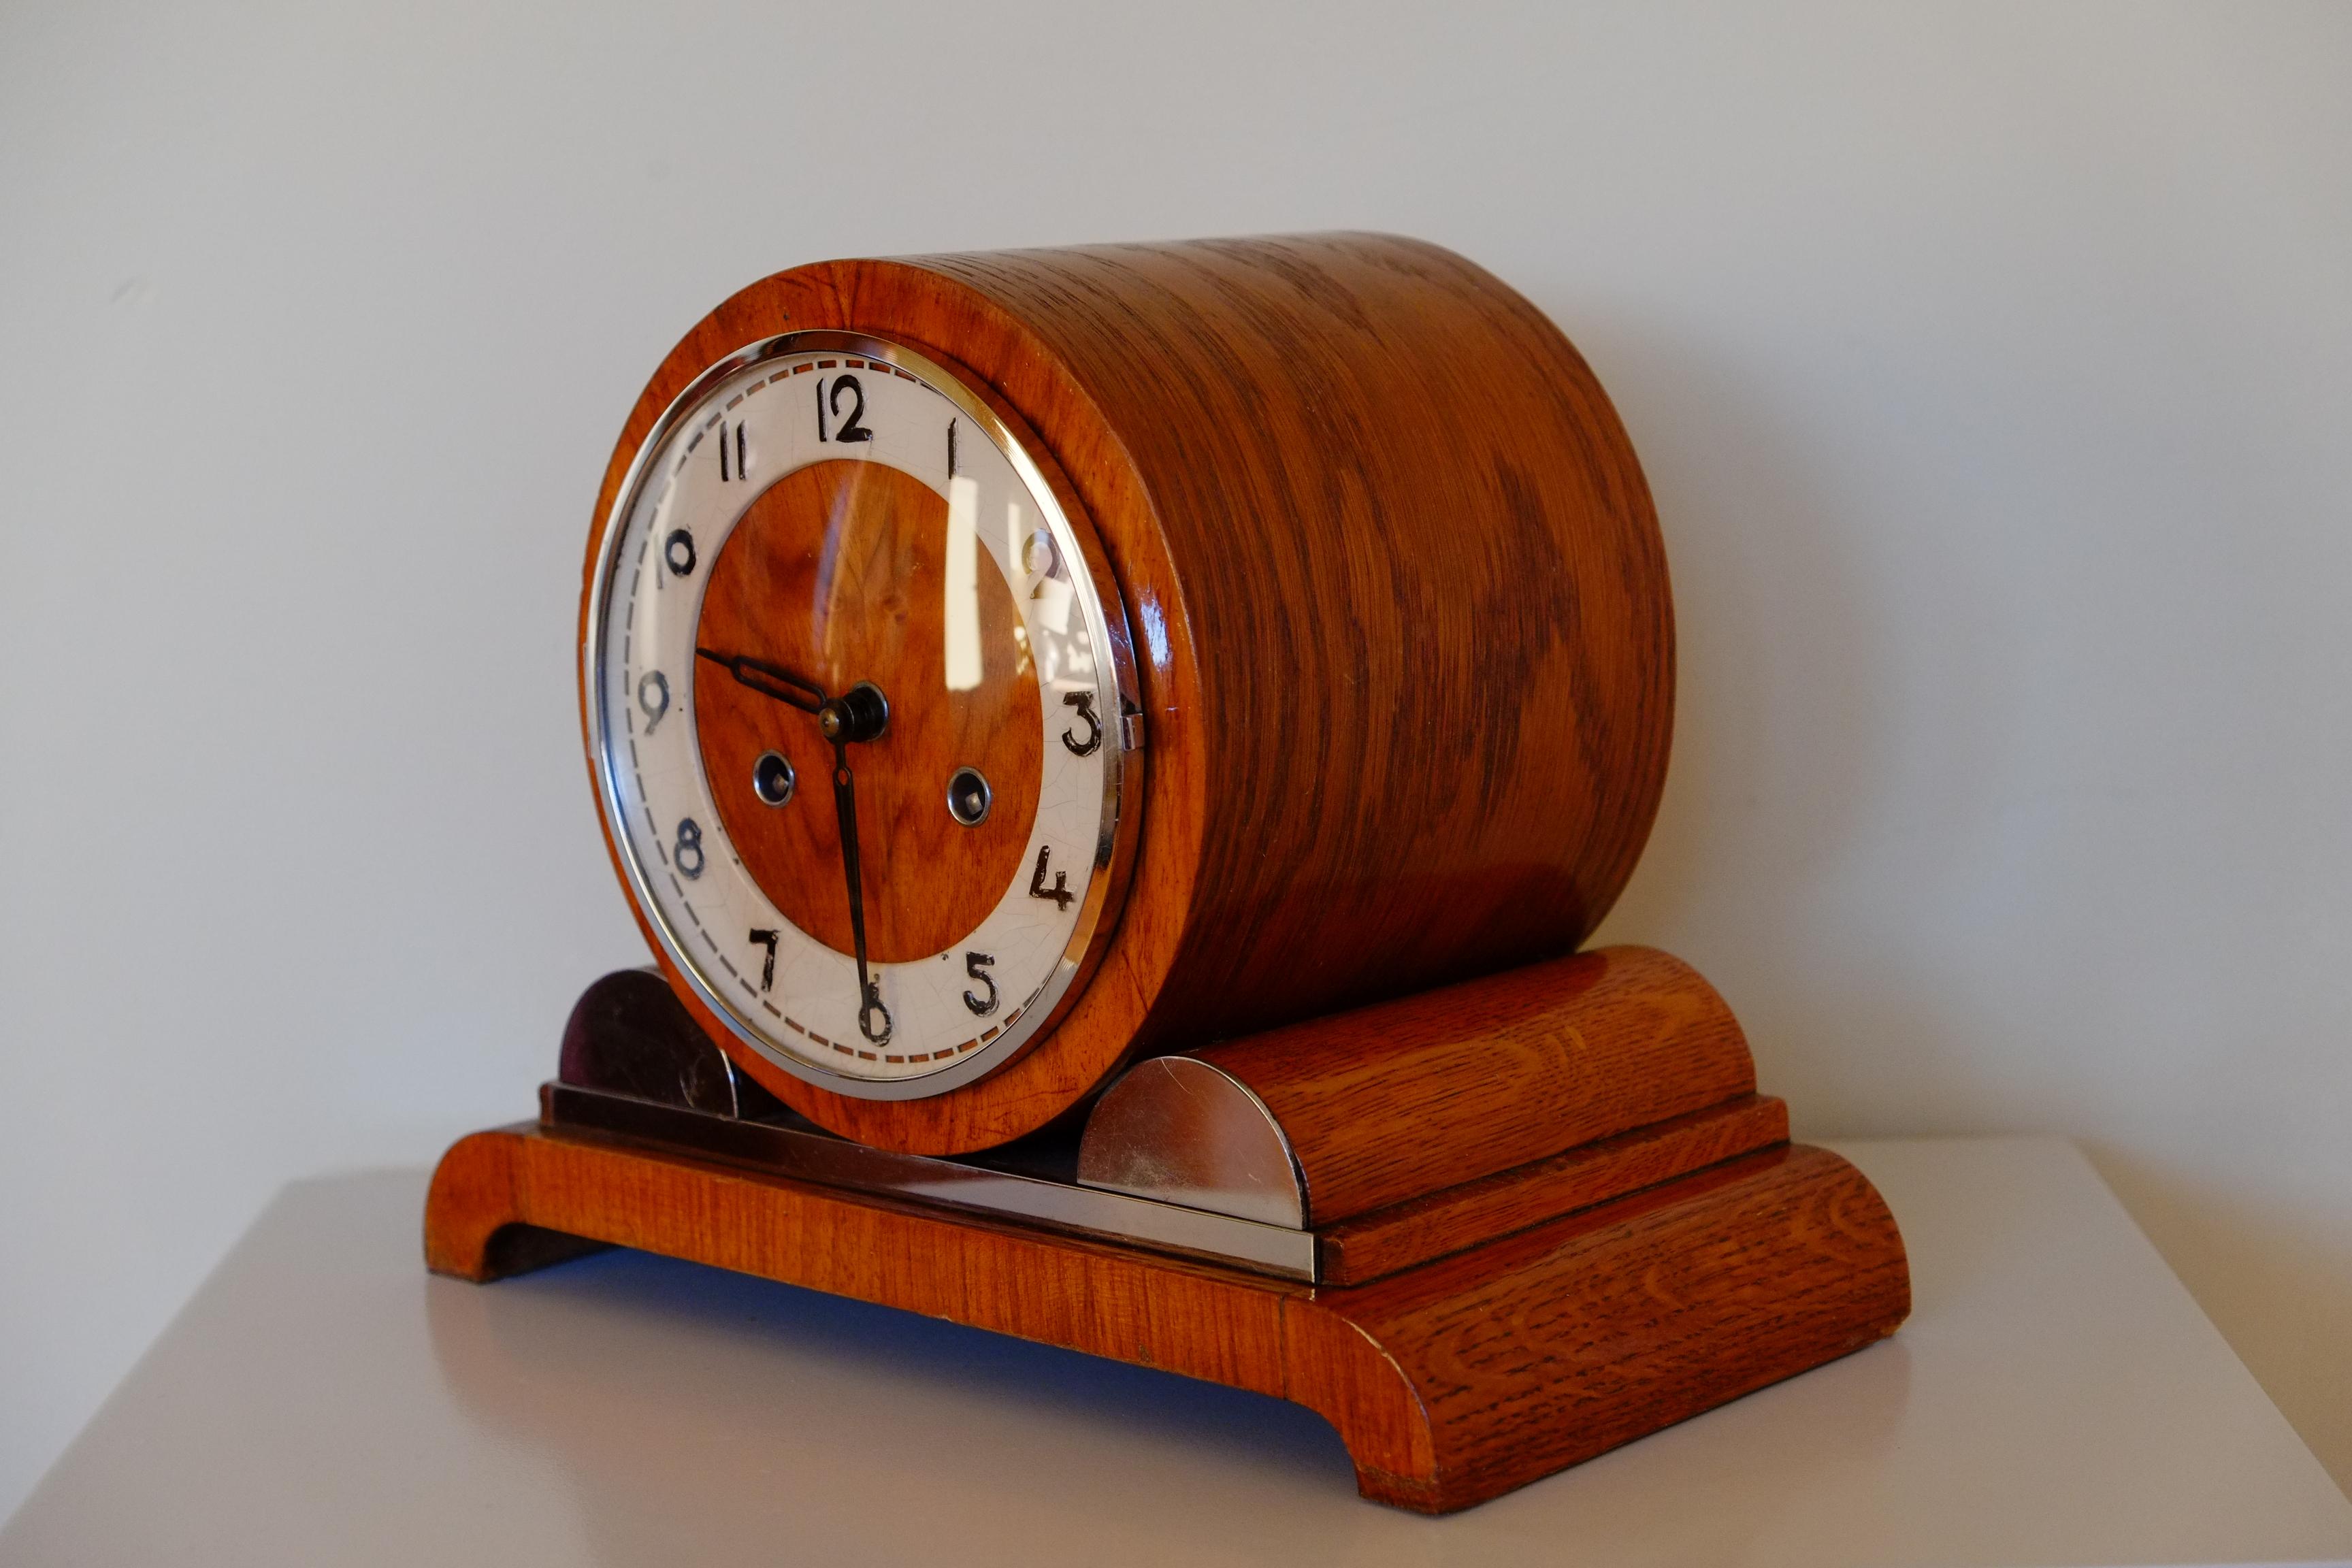 Enamel Rare Large Hermle German Bauhaus Wooden Mantle Clock with Chimes